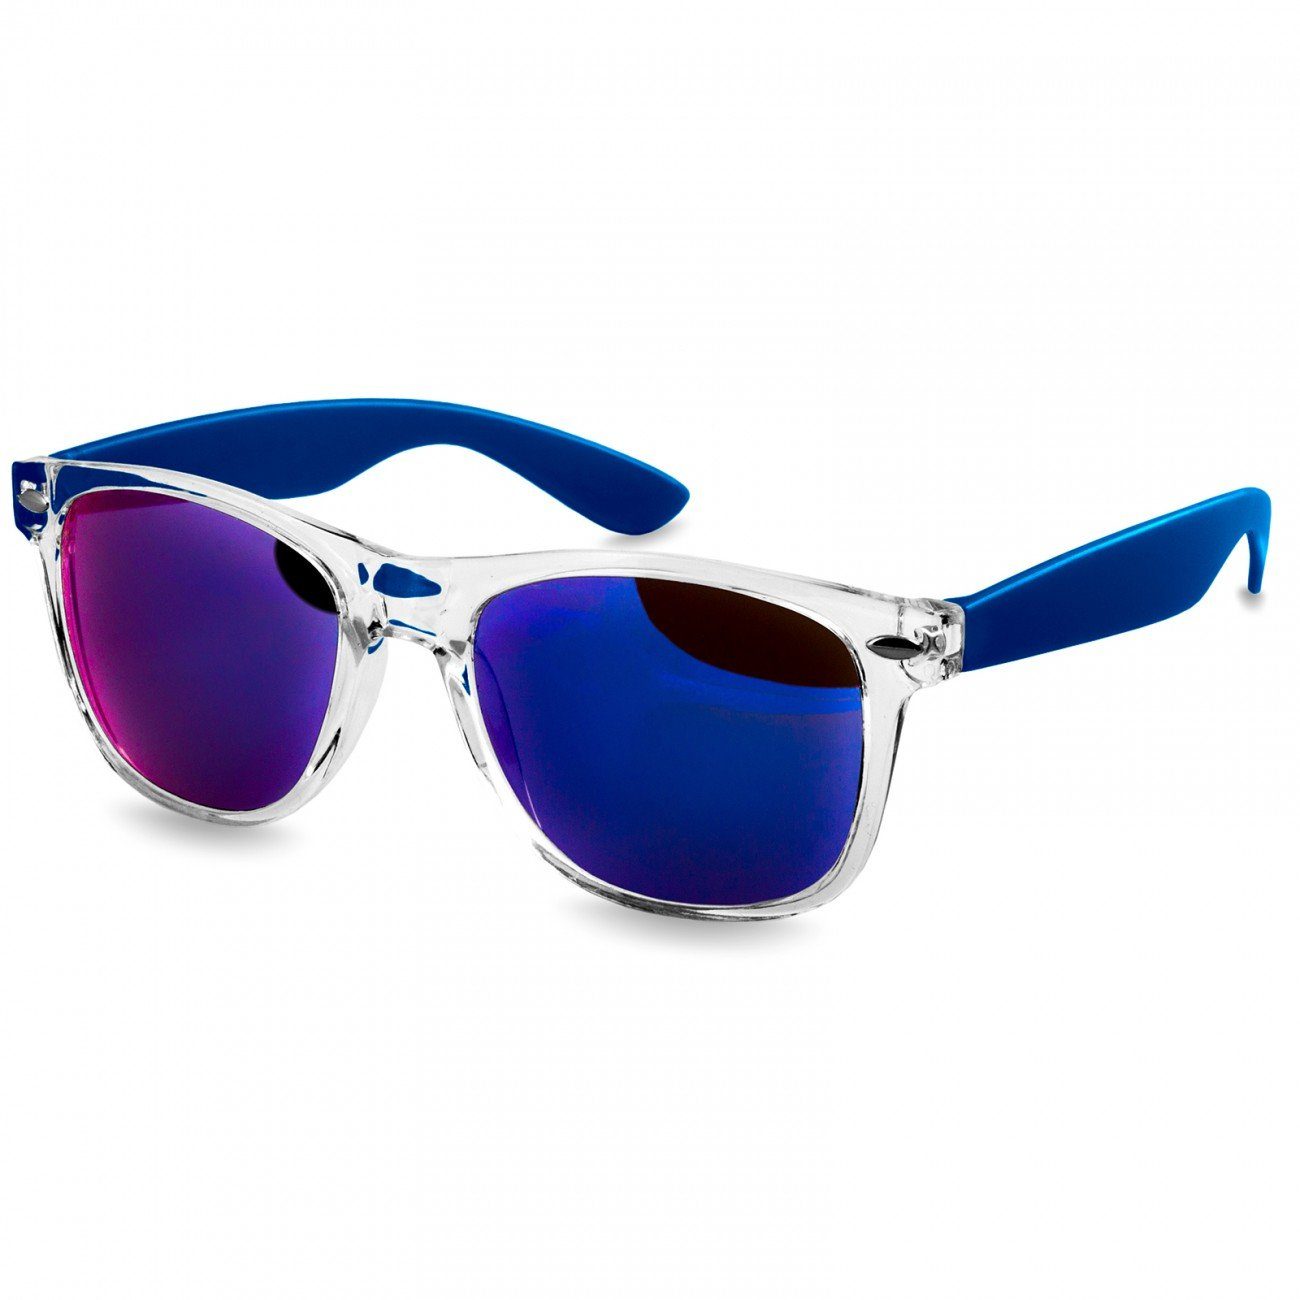 Caspar Sonnenbrille SG017 Damen RETRO Designbrille blau / blau verspiegelt